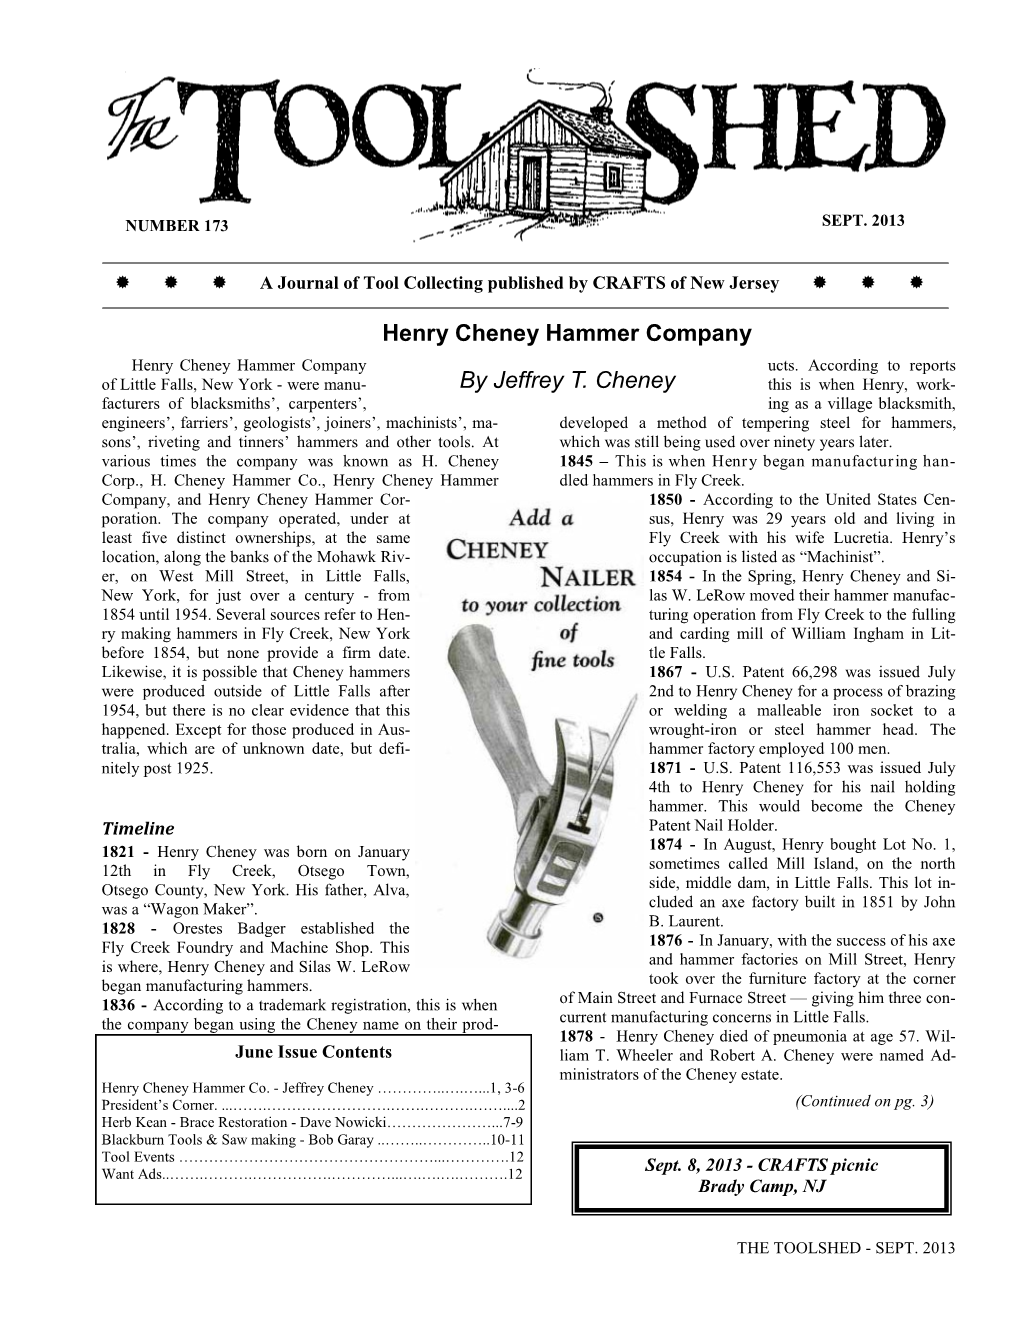 Henry Cheney Hammer Company by Jeffrey T. Cheney